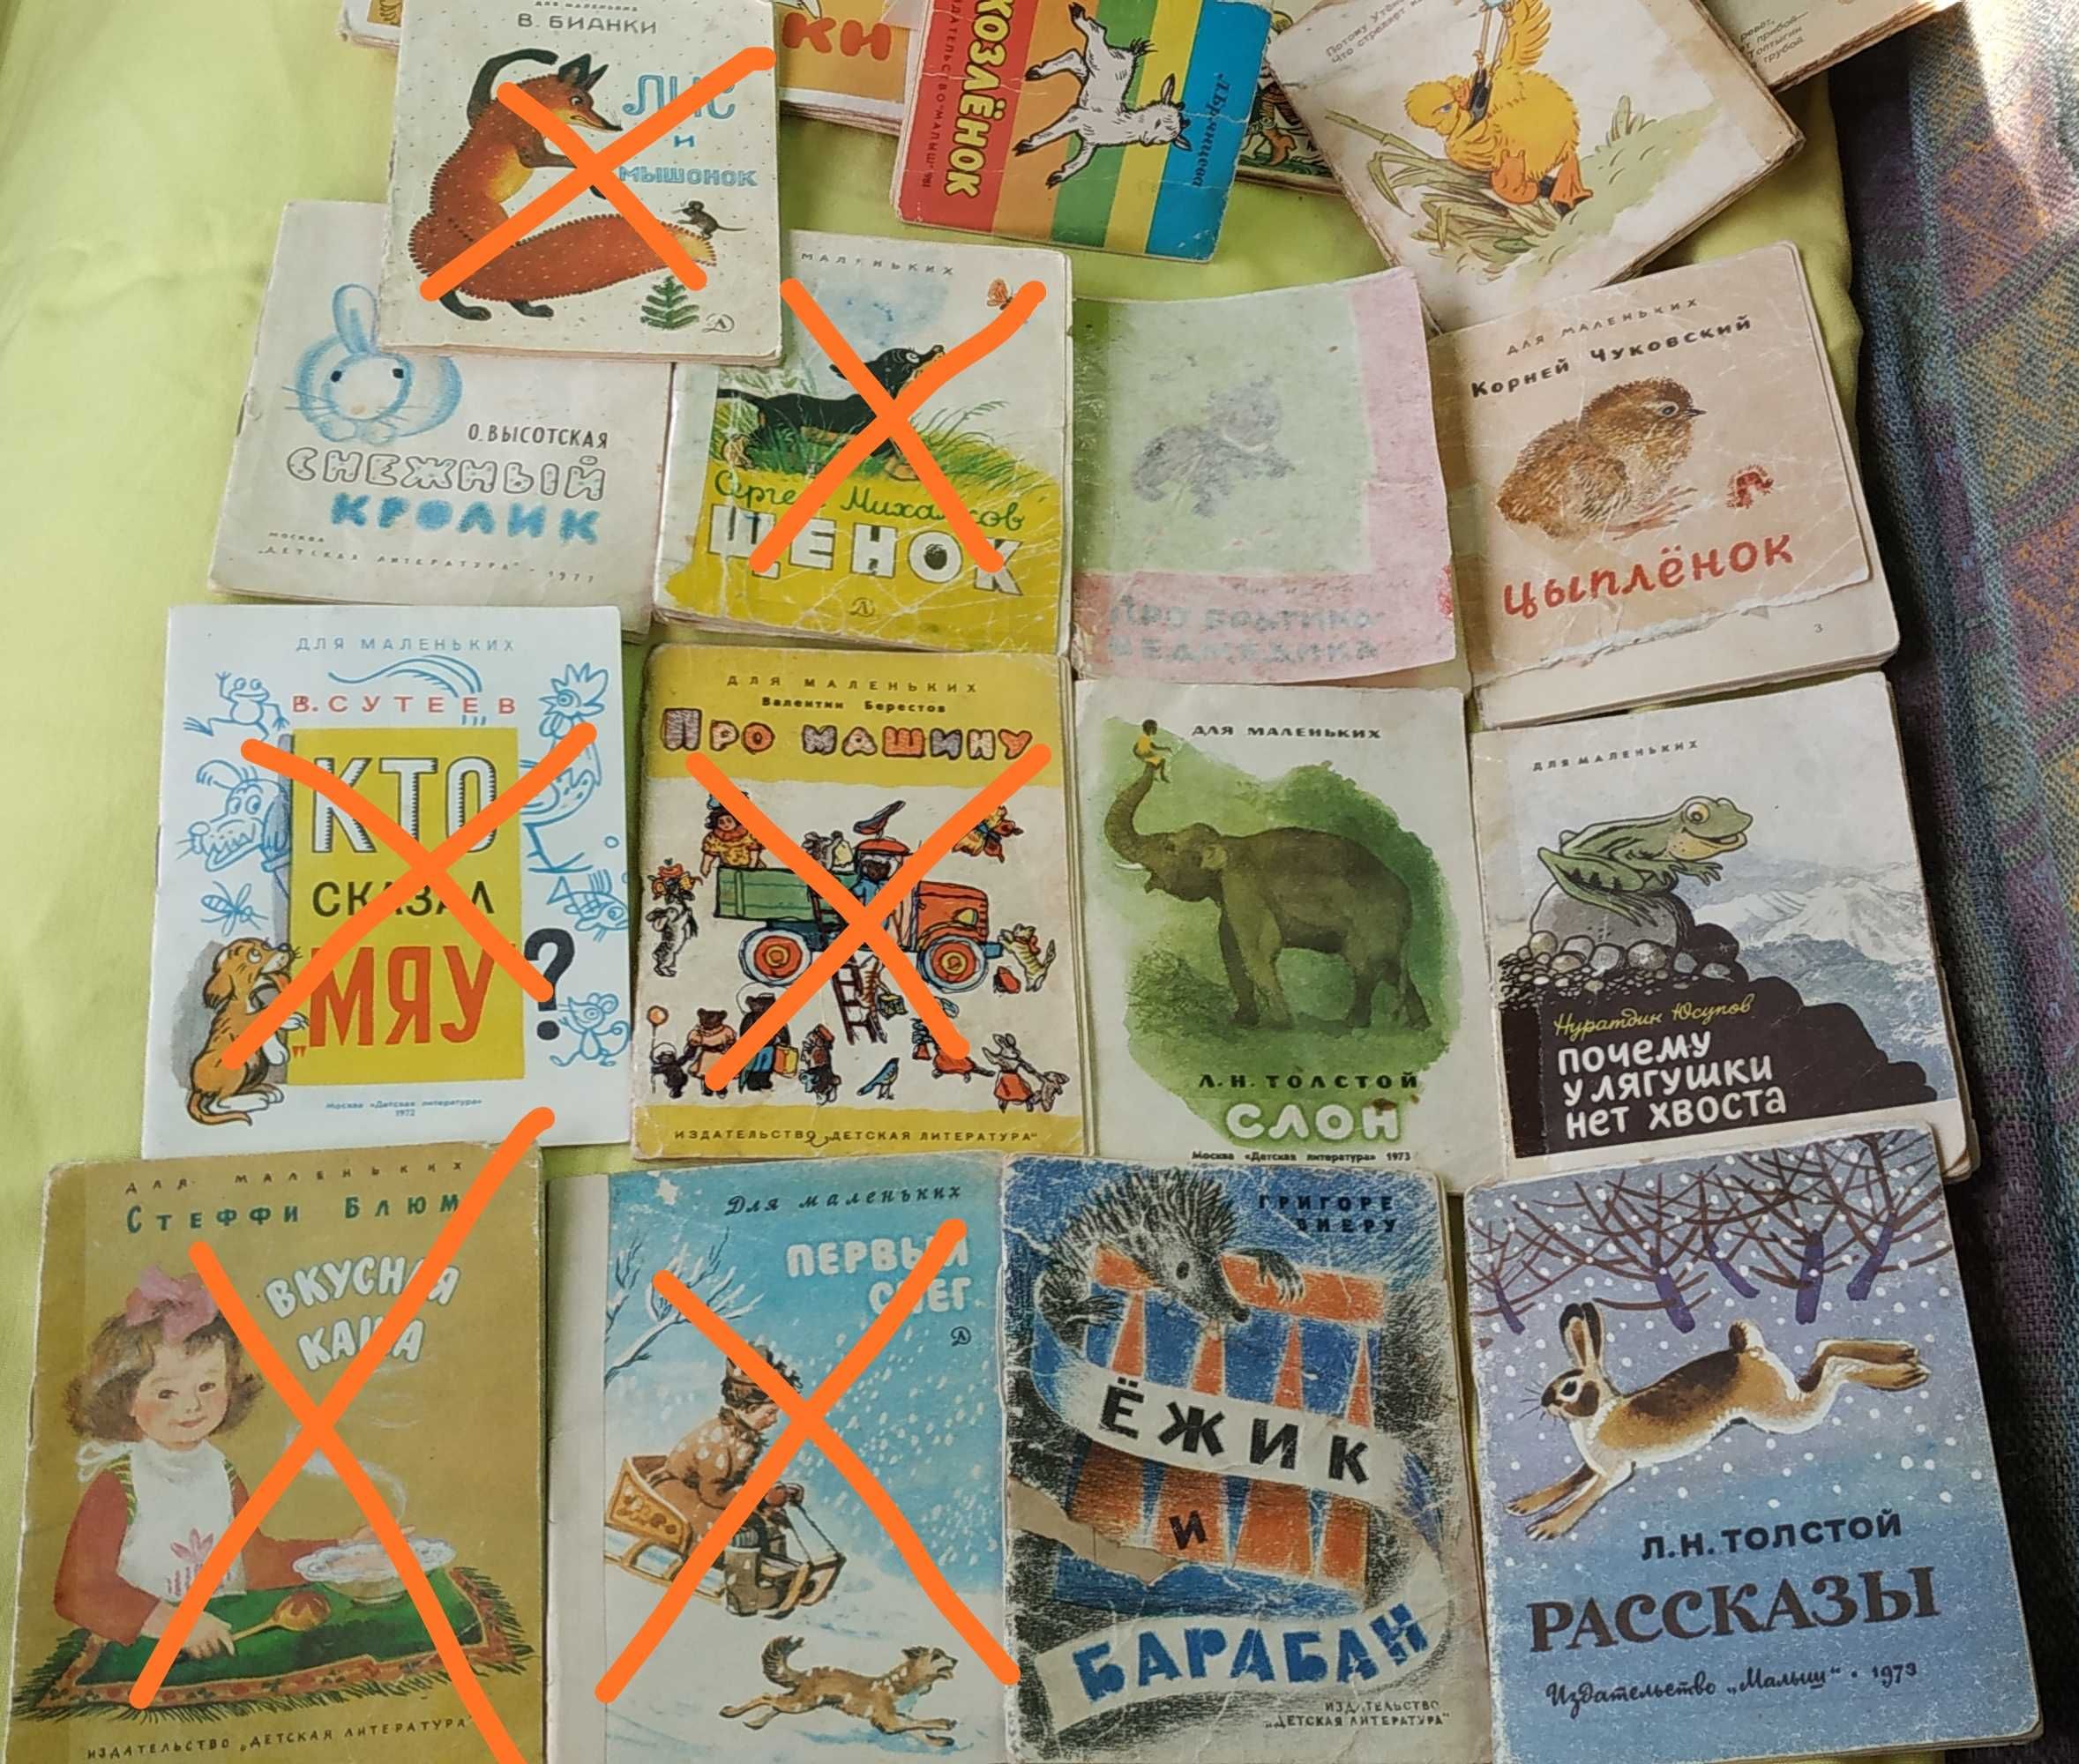 Детские книги, незнайка, журналы СССР, старые фото, открытки